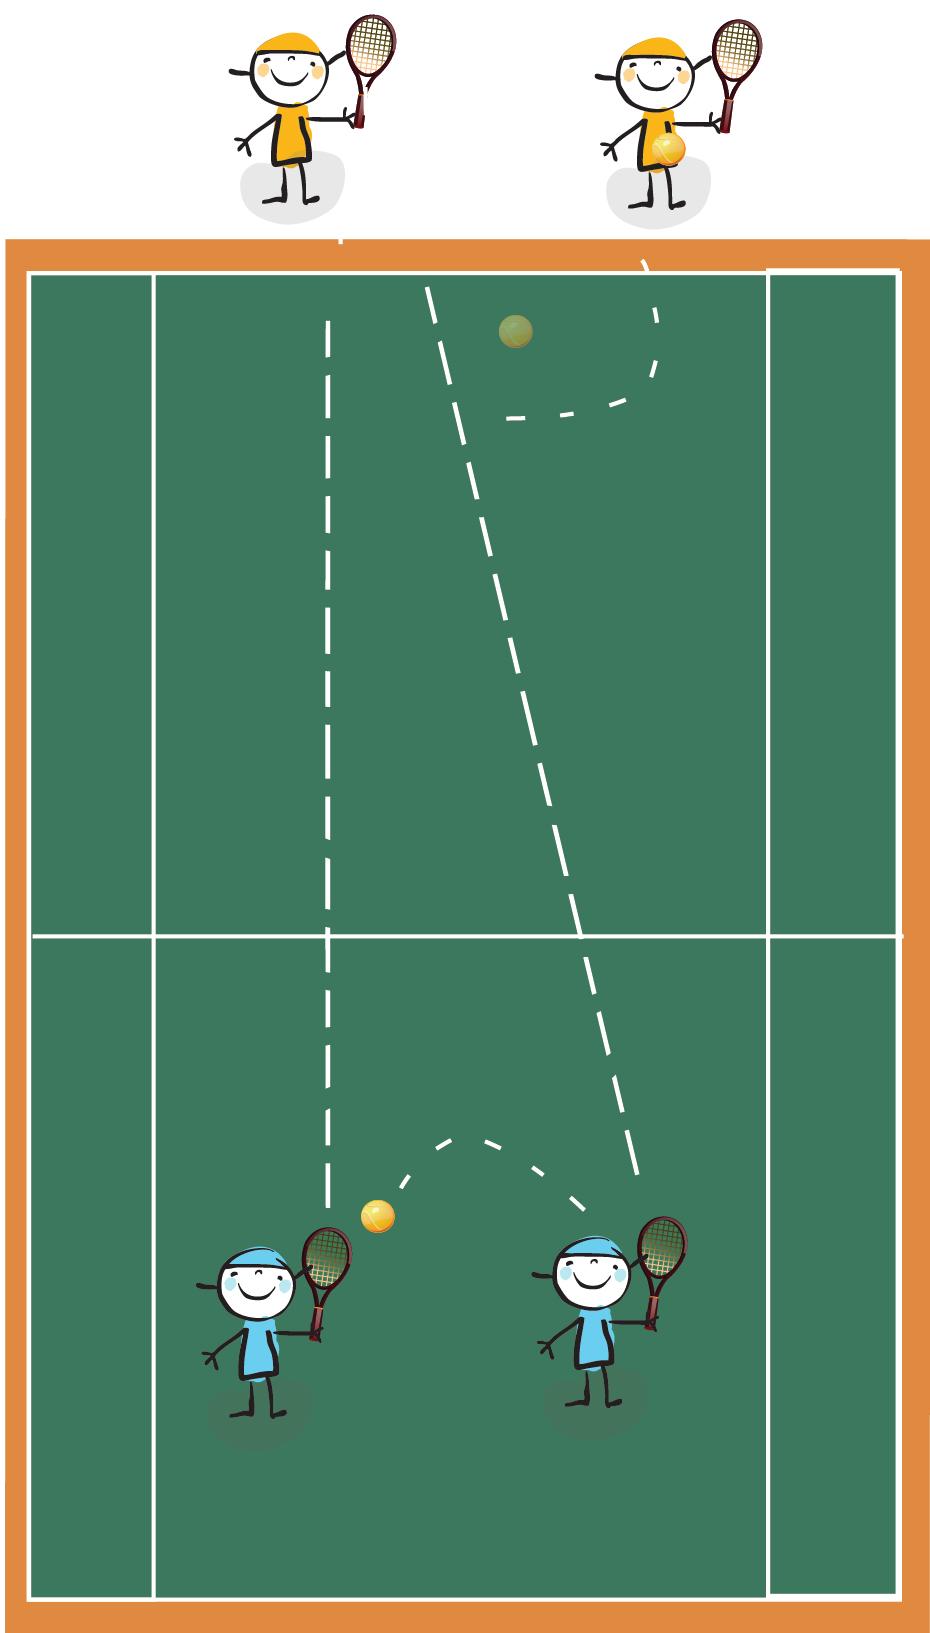 Material: Quatro raquetes, uma bola. 4. Descrição: Jogo de vôlei em duplas, mas utilizando-se a raquete para efetuar as jogadas.